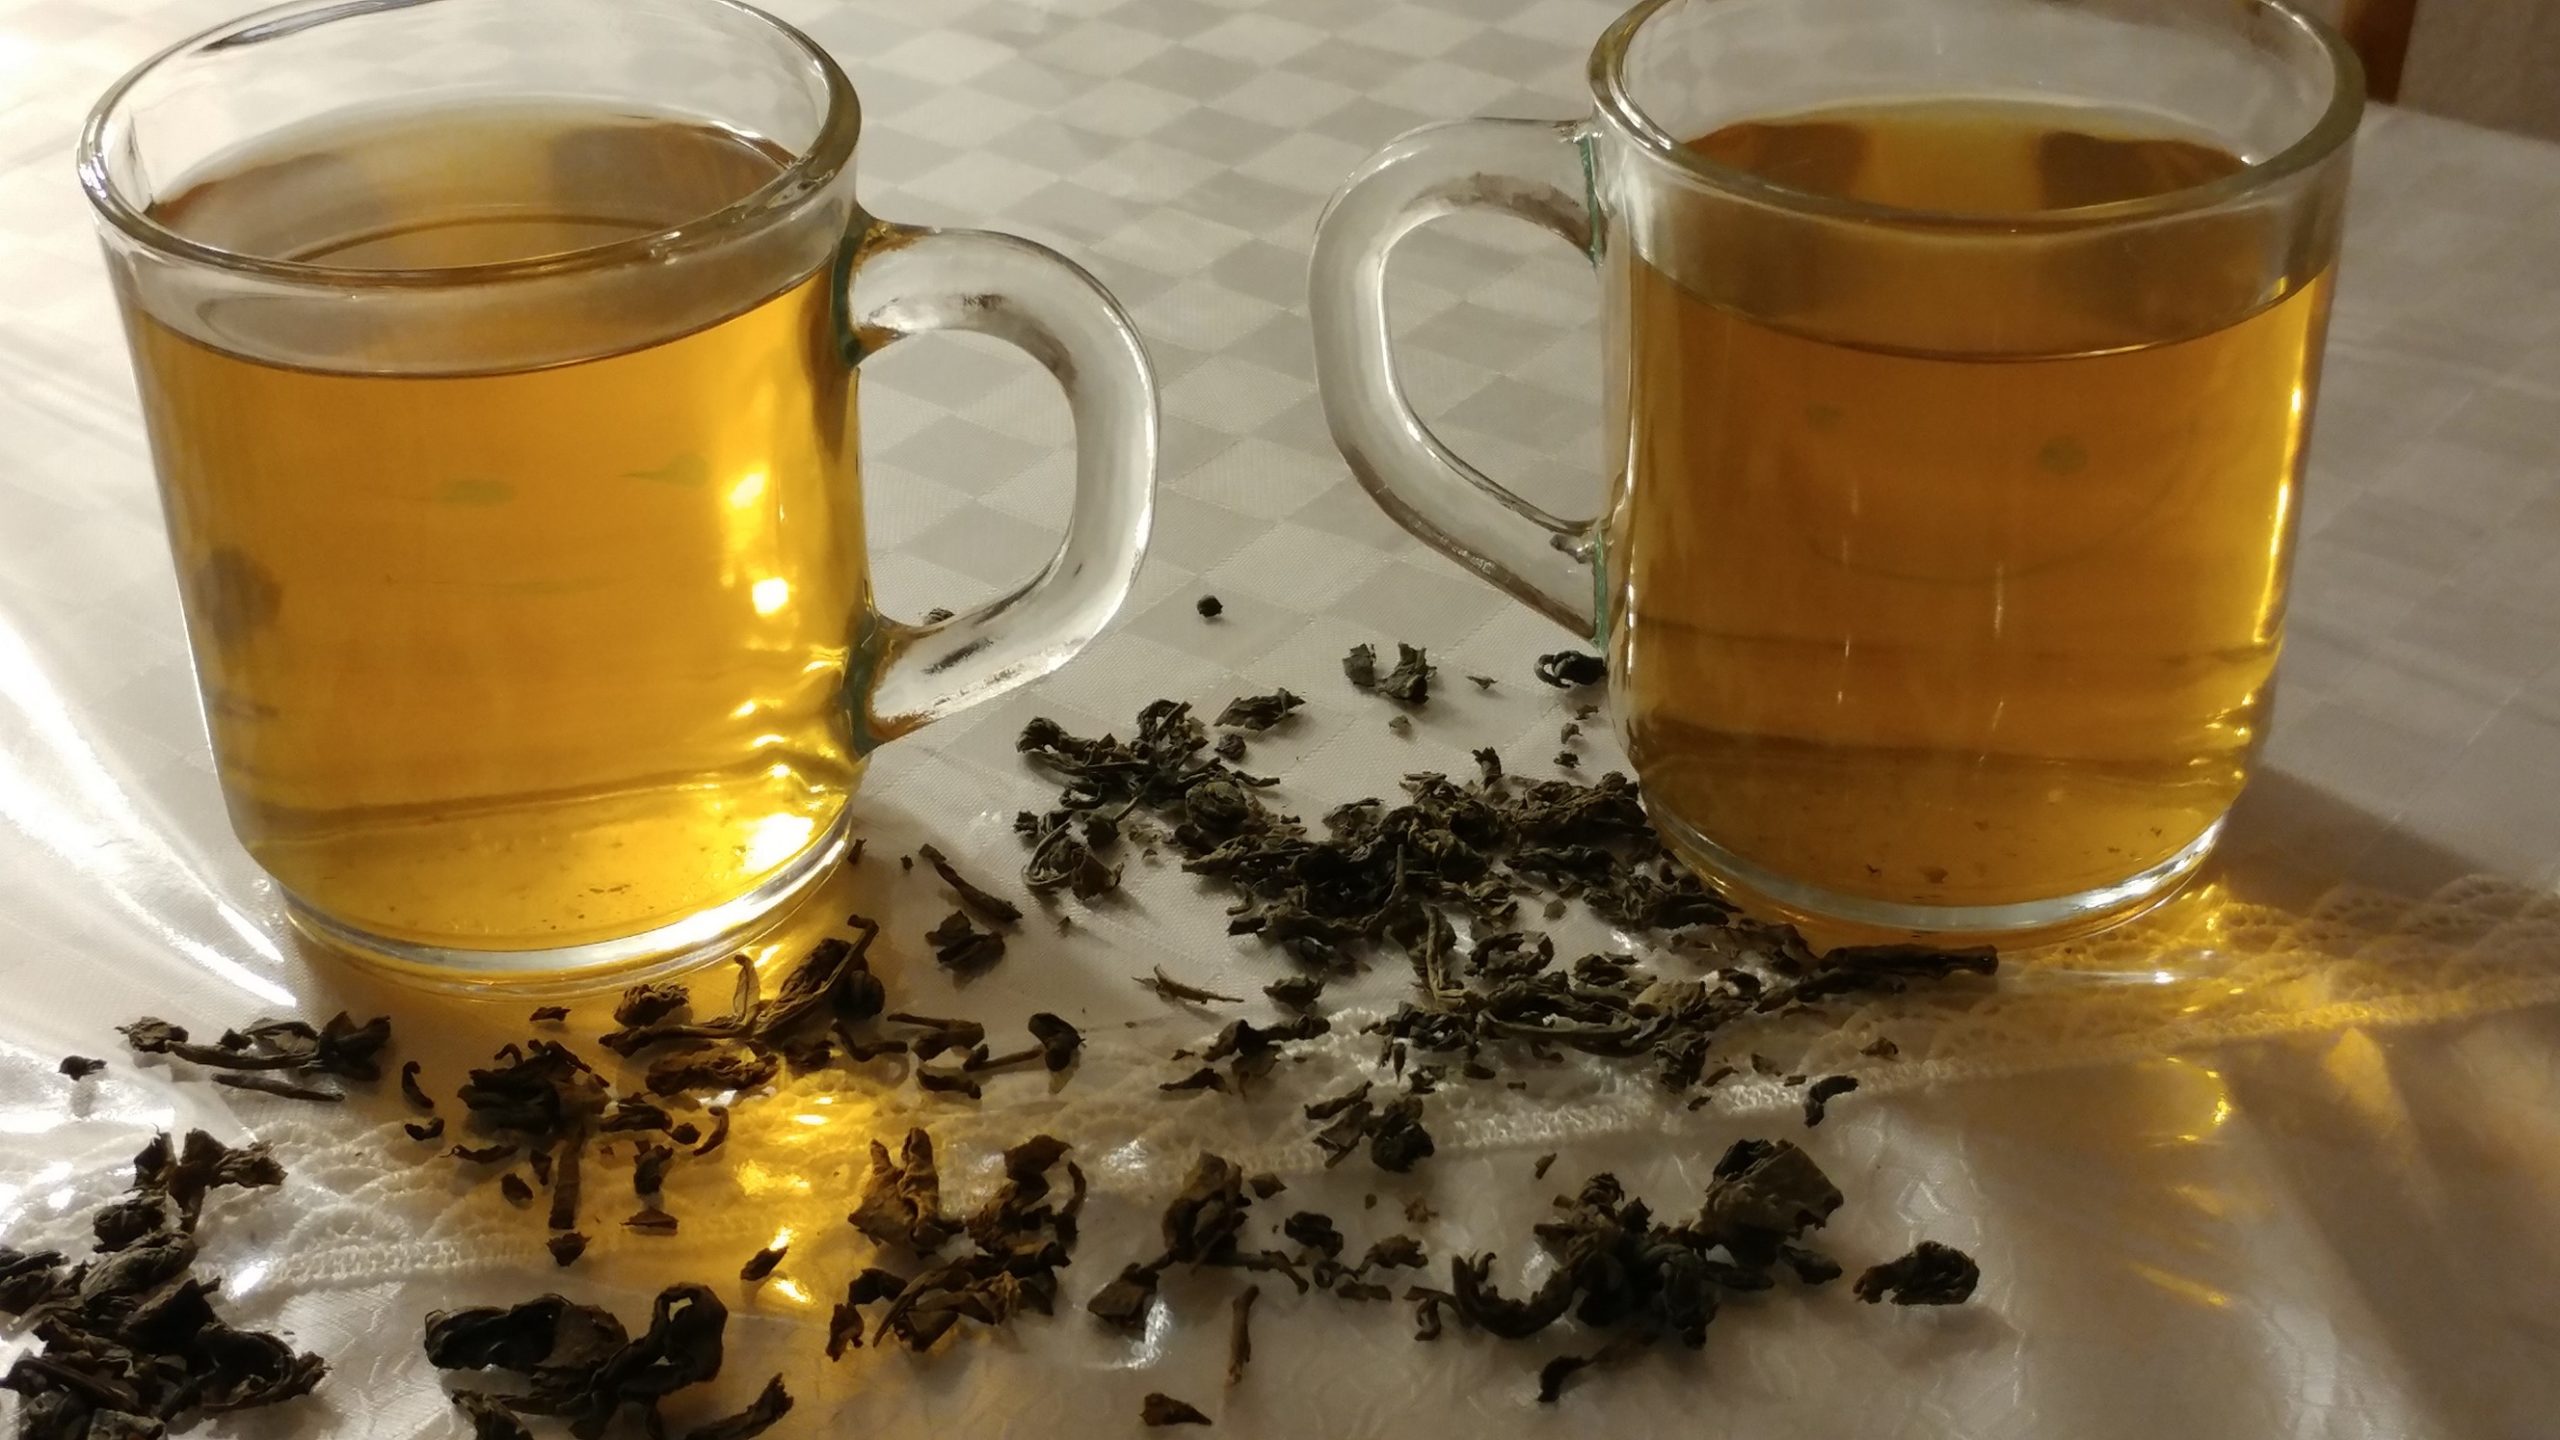 وصفة مشكورة من خبيرة تجميل لتلوين الشيب بمحلول الشاي